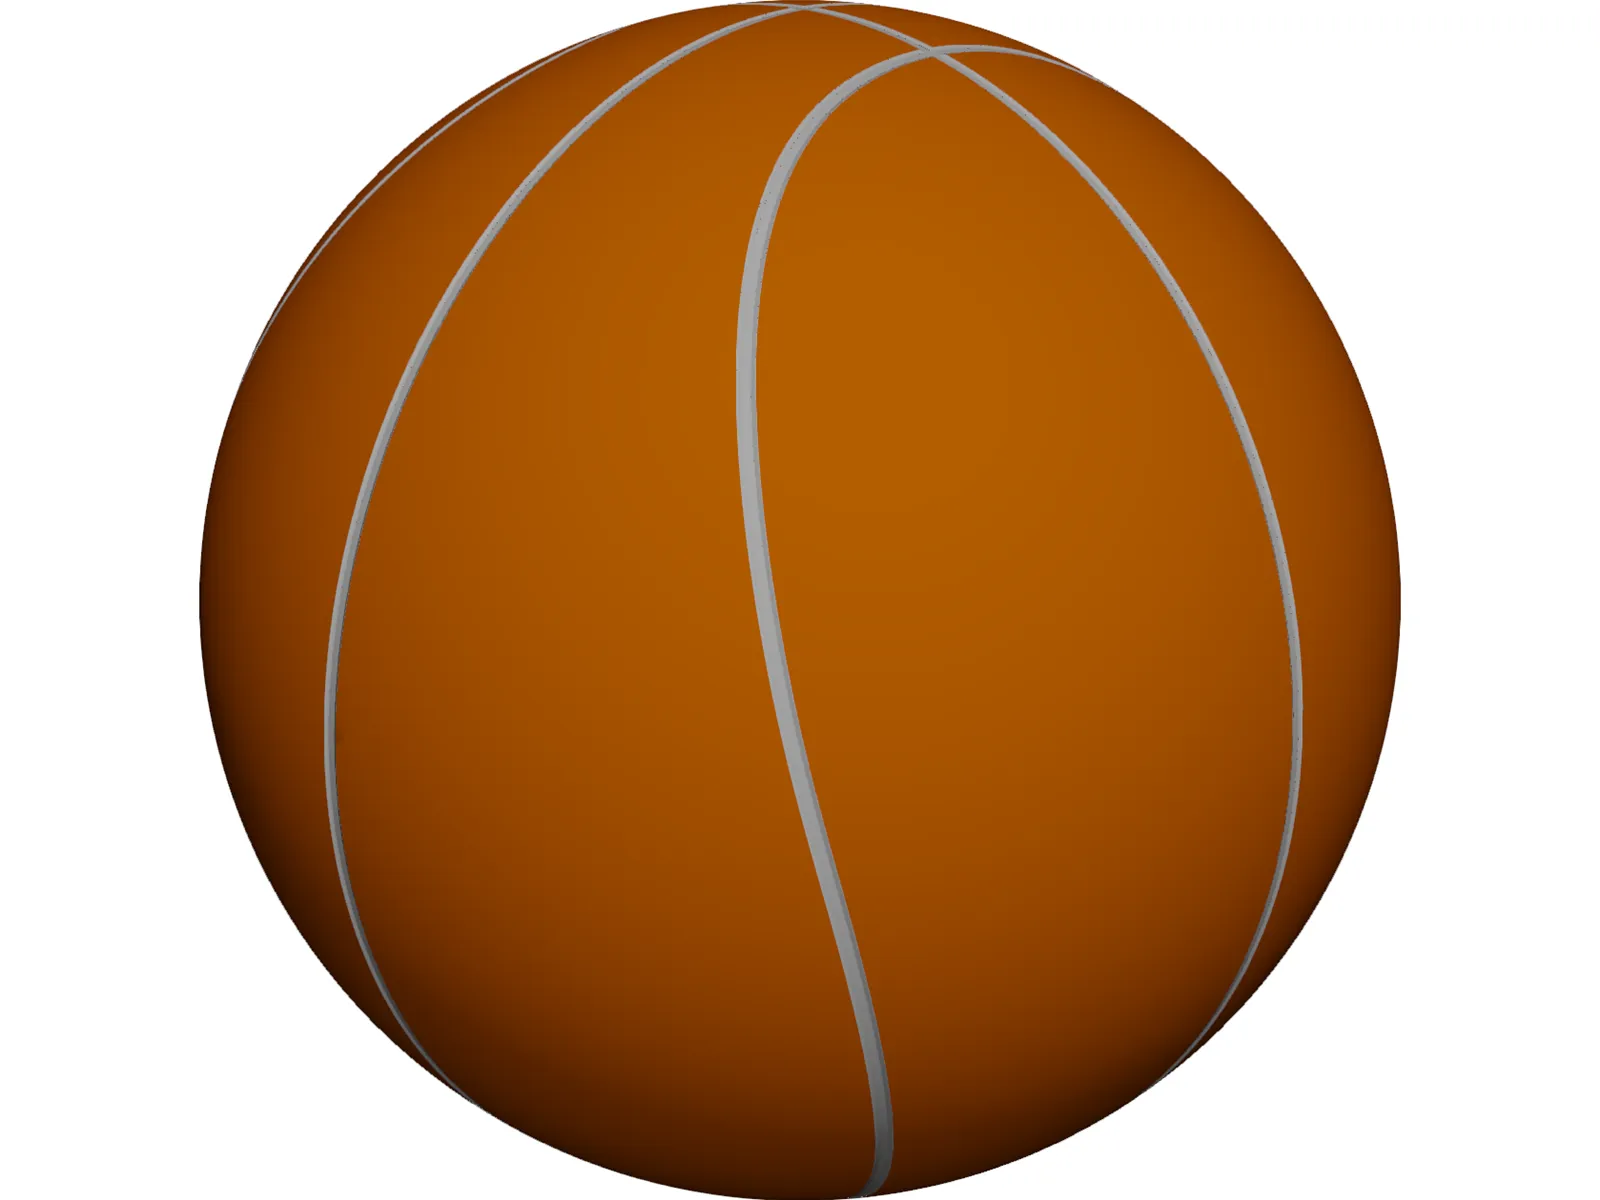 Bola de Basquete (Basketball), 3D CAD Model Library